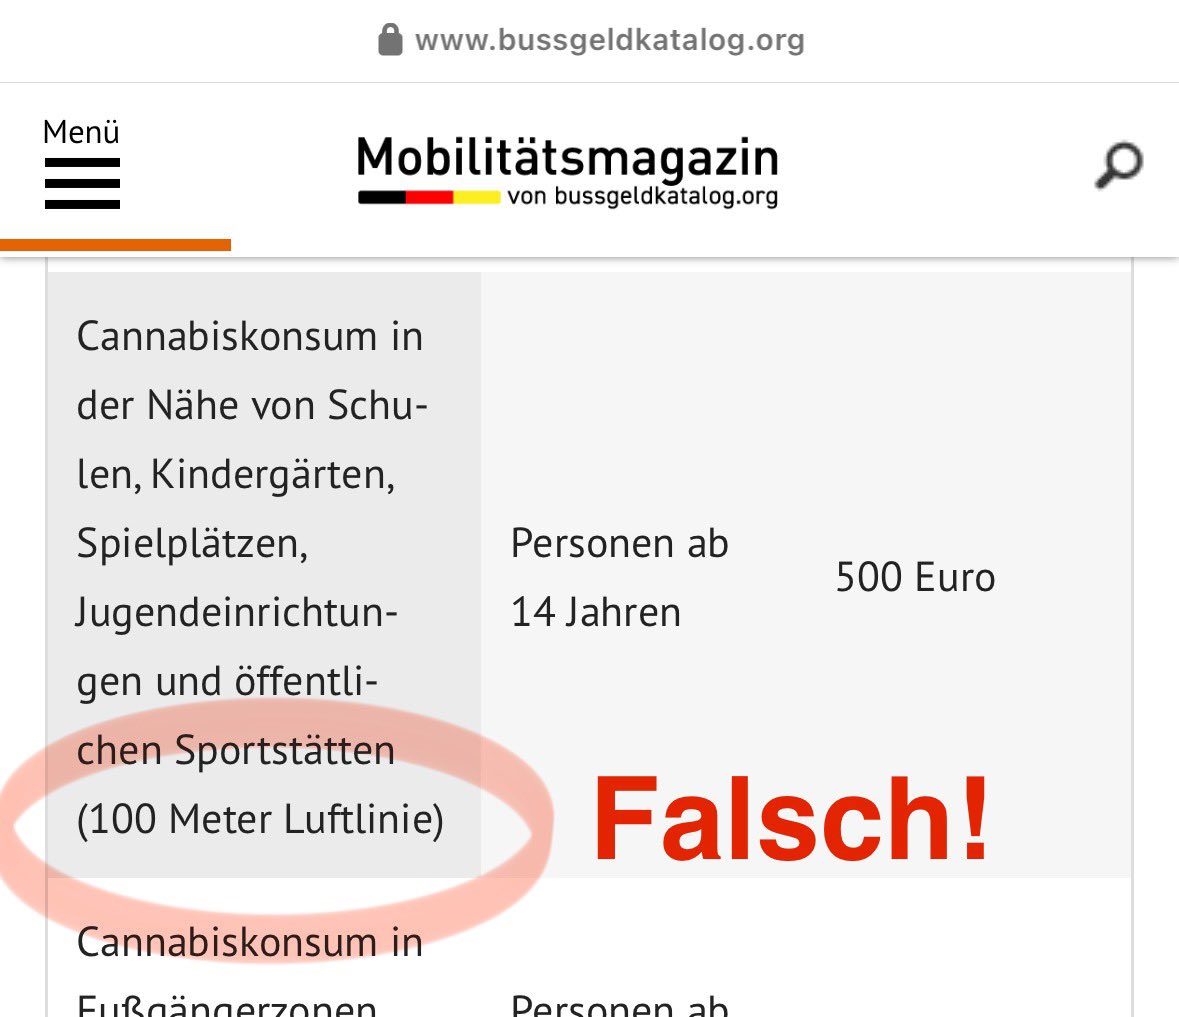 Vorsicht Falschmeldung:
Aktuell kursiert das Gerücht, Bayern habe das Konsumverbot § 5 II KCanG auf pauschal 100m ausgeweitet.
In Bayern gilt wie bundesweit § 5 II KCanG, also Sichtweite höchstens jedoch 100m.

„Wer entgegen § 5 Absatz 2 Cannabis
konsumiert.“: 500 Euro